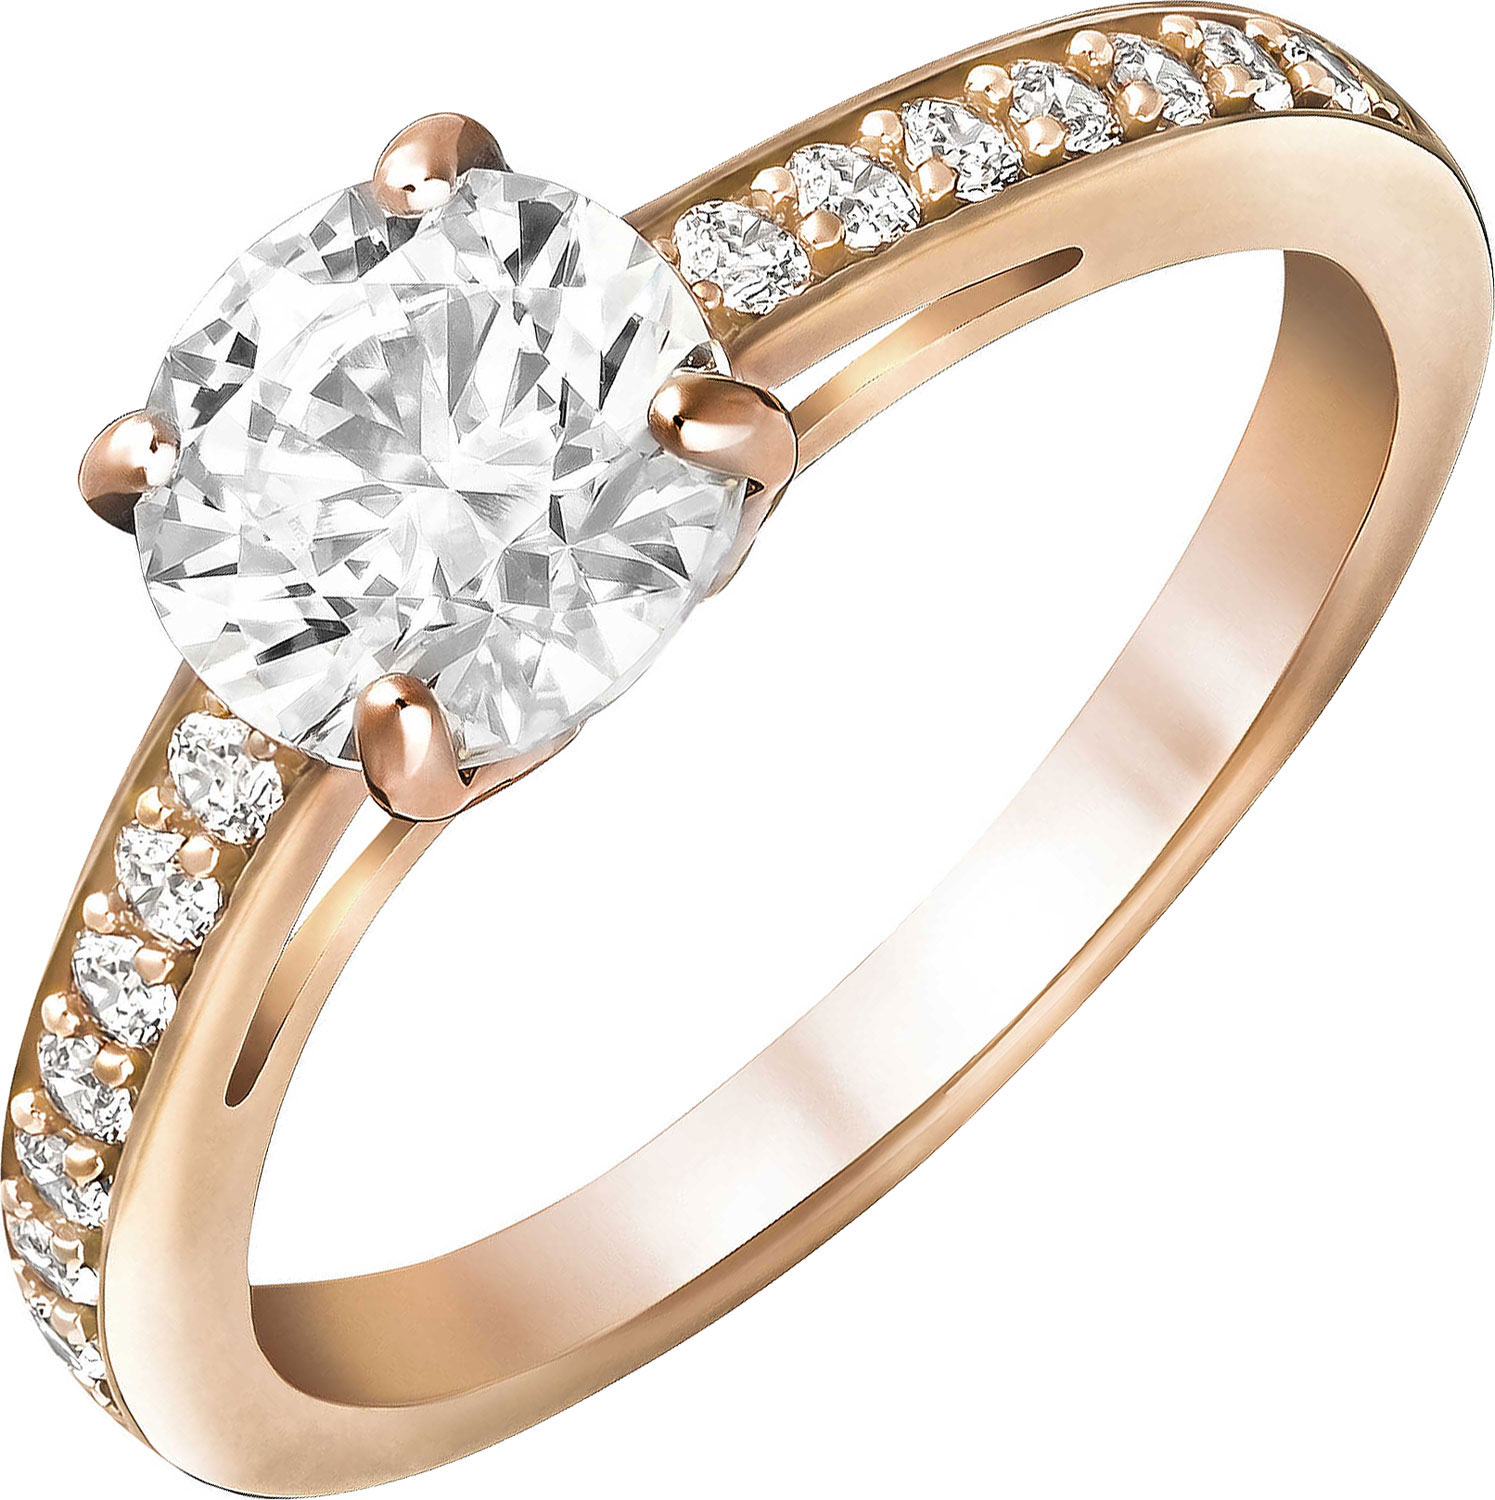 Кольцо золотое любимой. Swarovski attract кольцо. Помолвочное кольцо Swarovski. Кольцо Swarovski 5539748_18-5. Кольцо Swarovski 5535359_18-5.